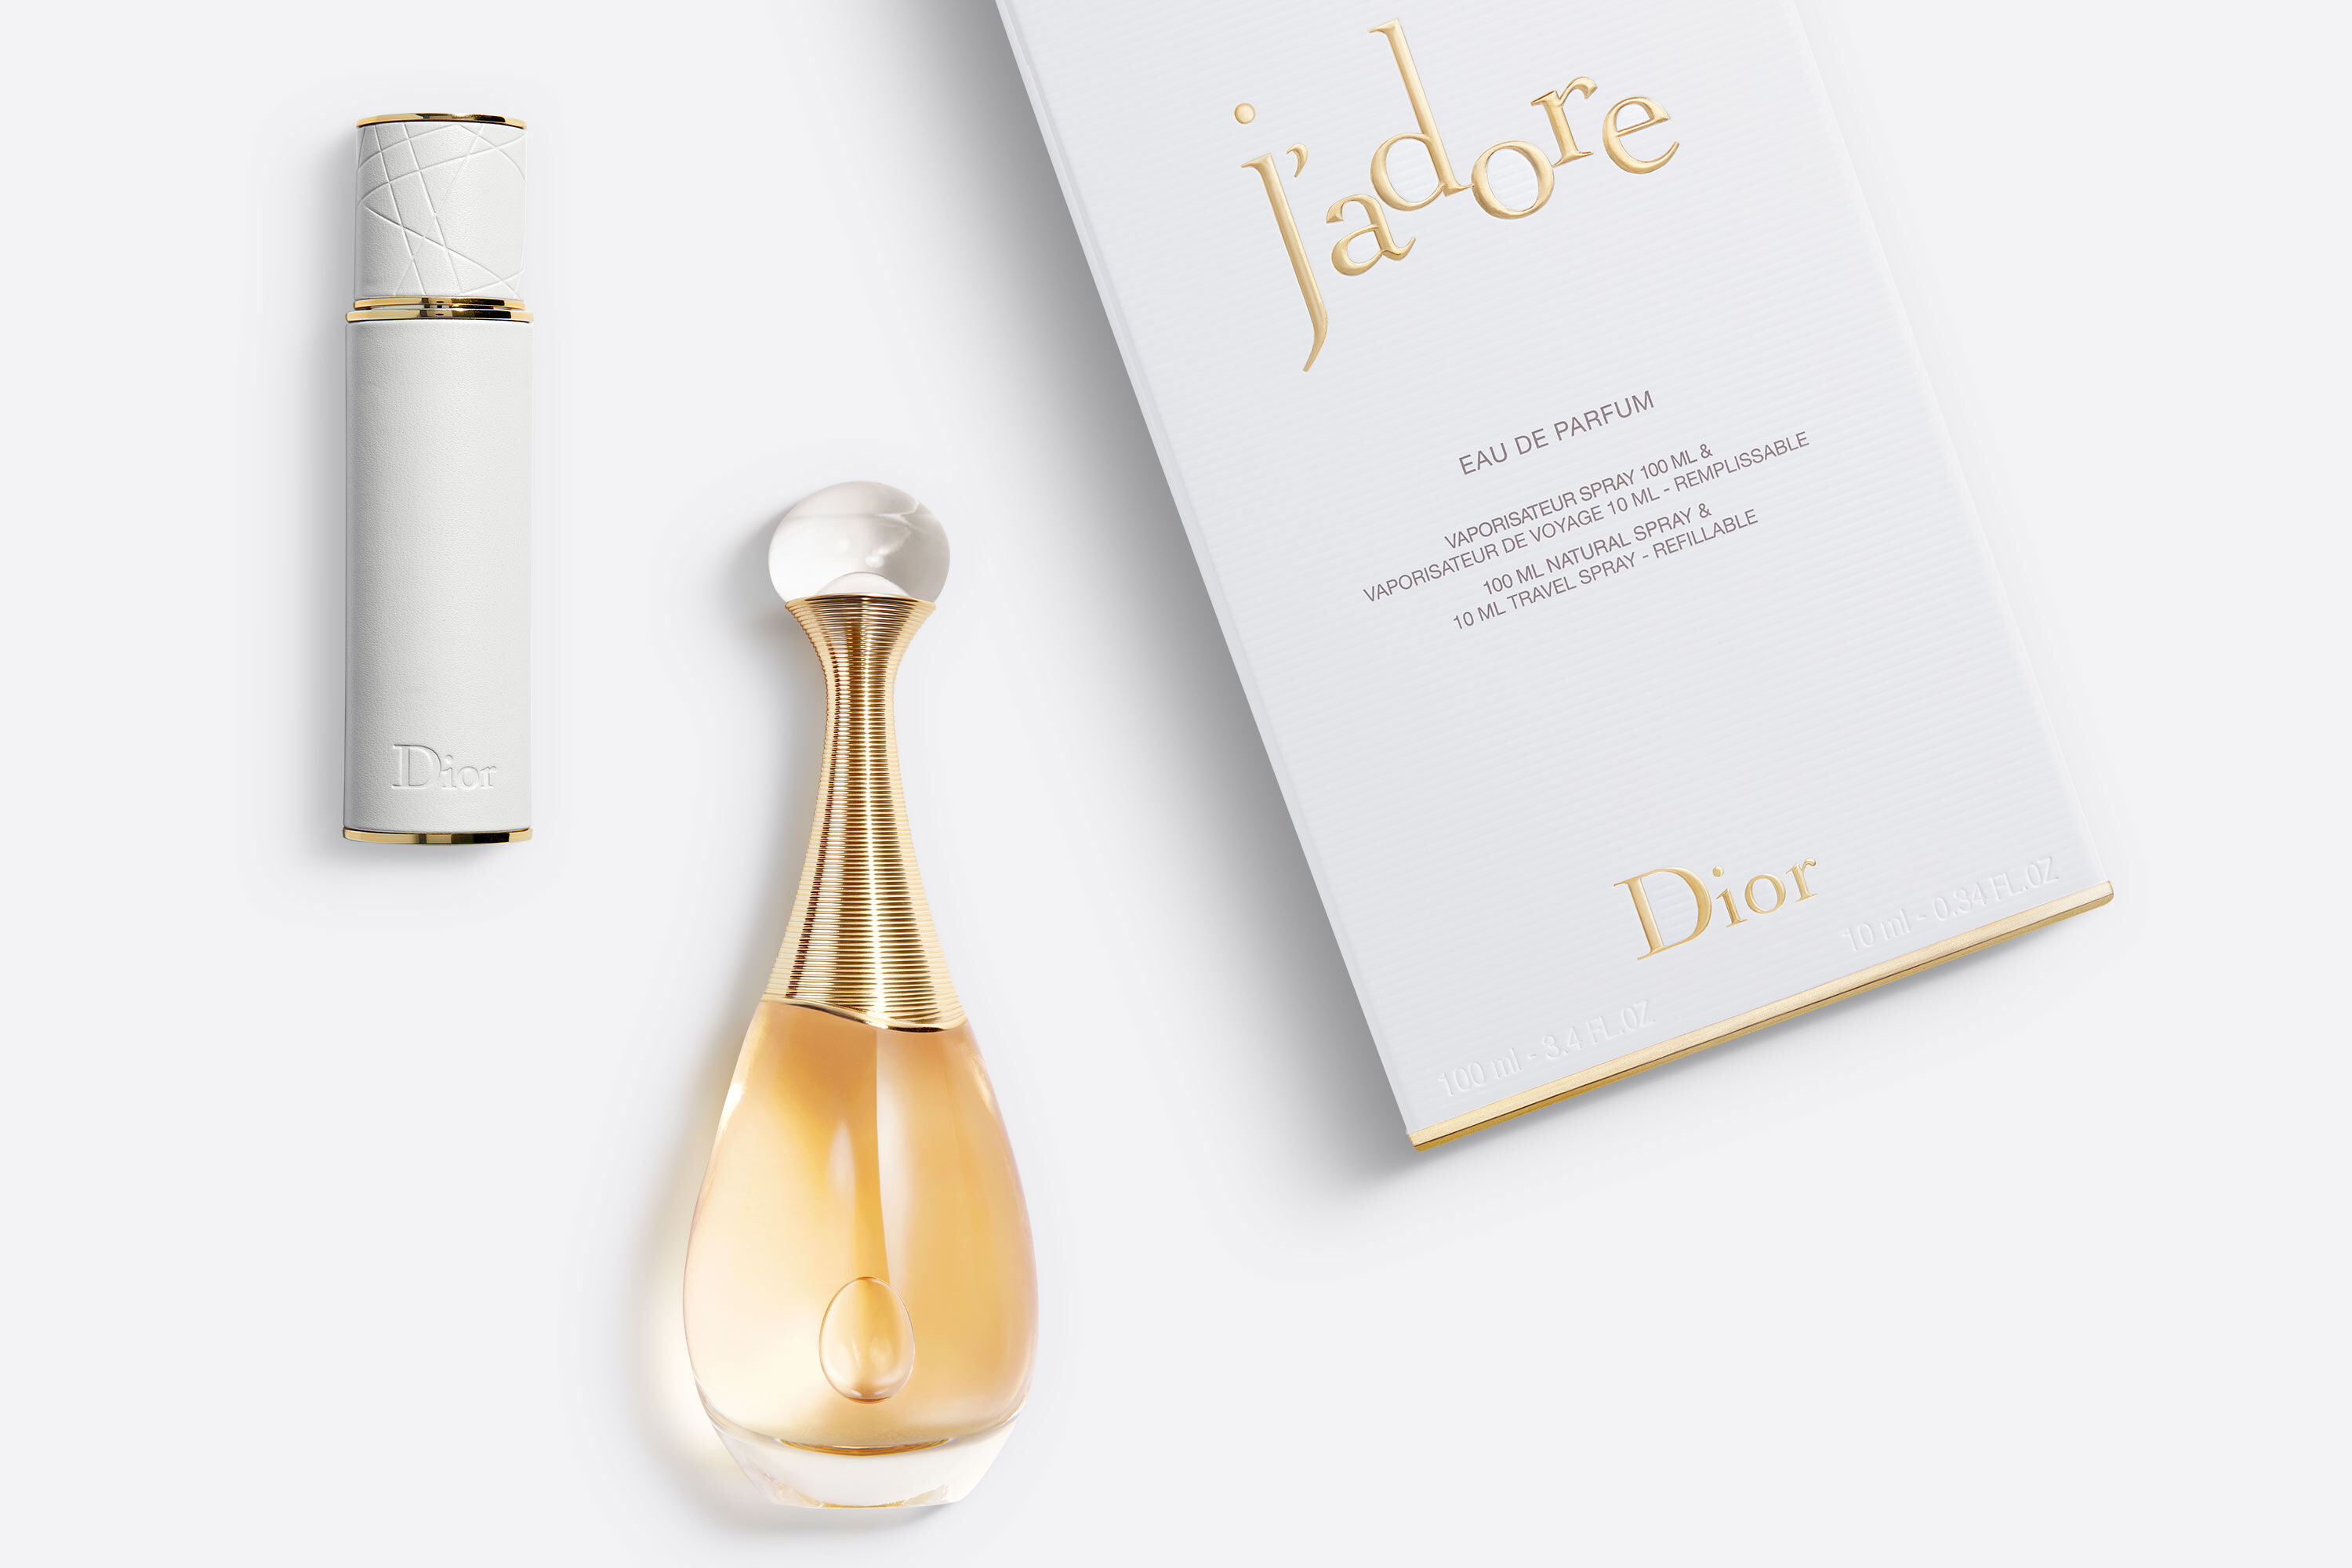 Waarnemen Doordeweekse dagen geld J'adore eau de parfum travel spray: the fragrance in travel size | DIOR